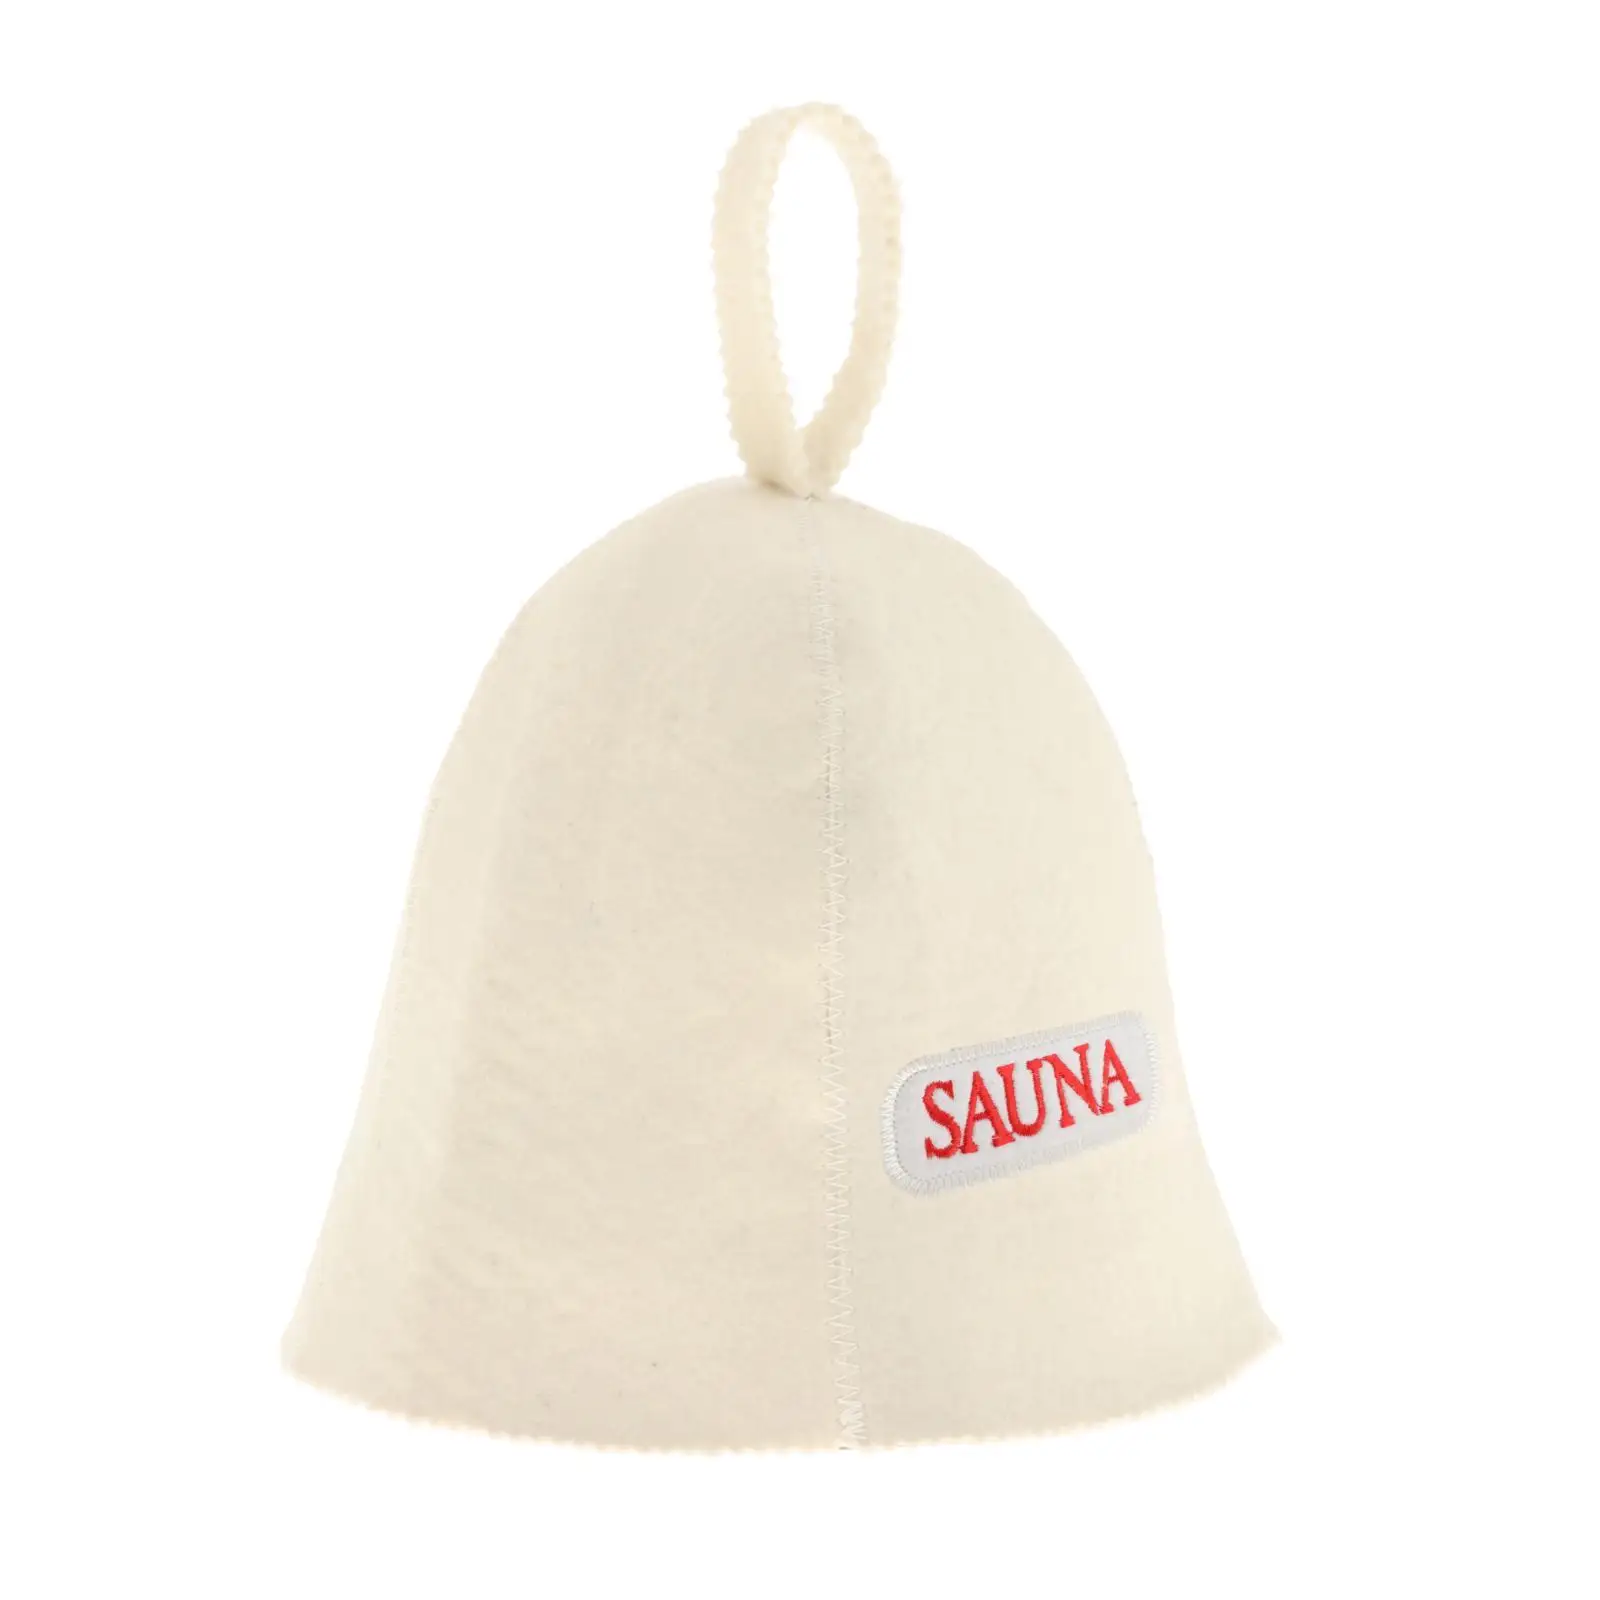 Sauna Hat Russian  Cap Wool Felt Modern Lightweight Head  for Bathhouse Vaporarium